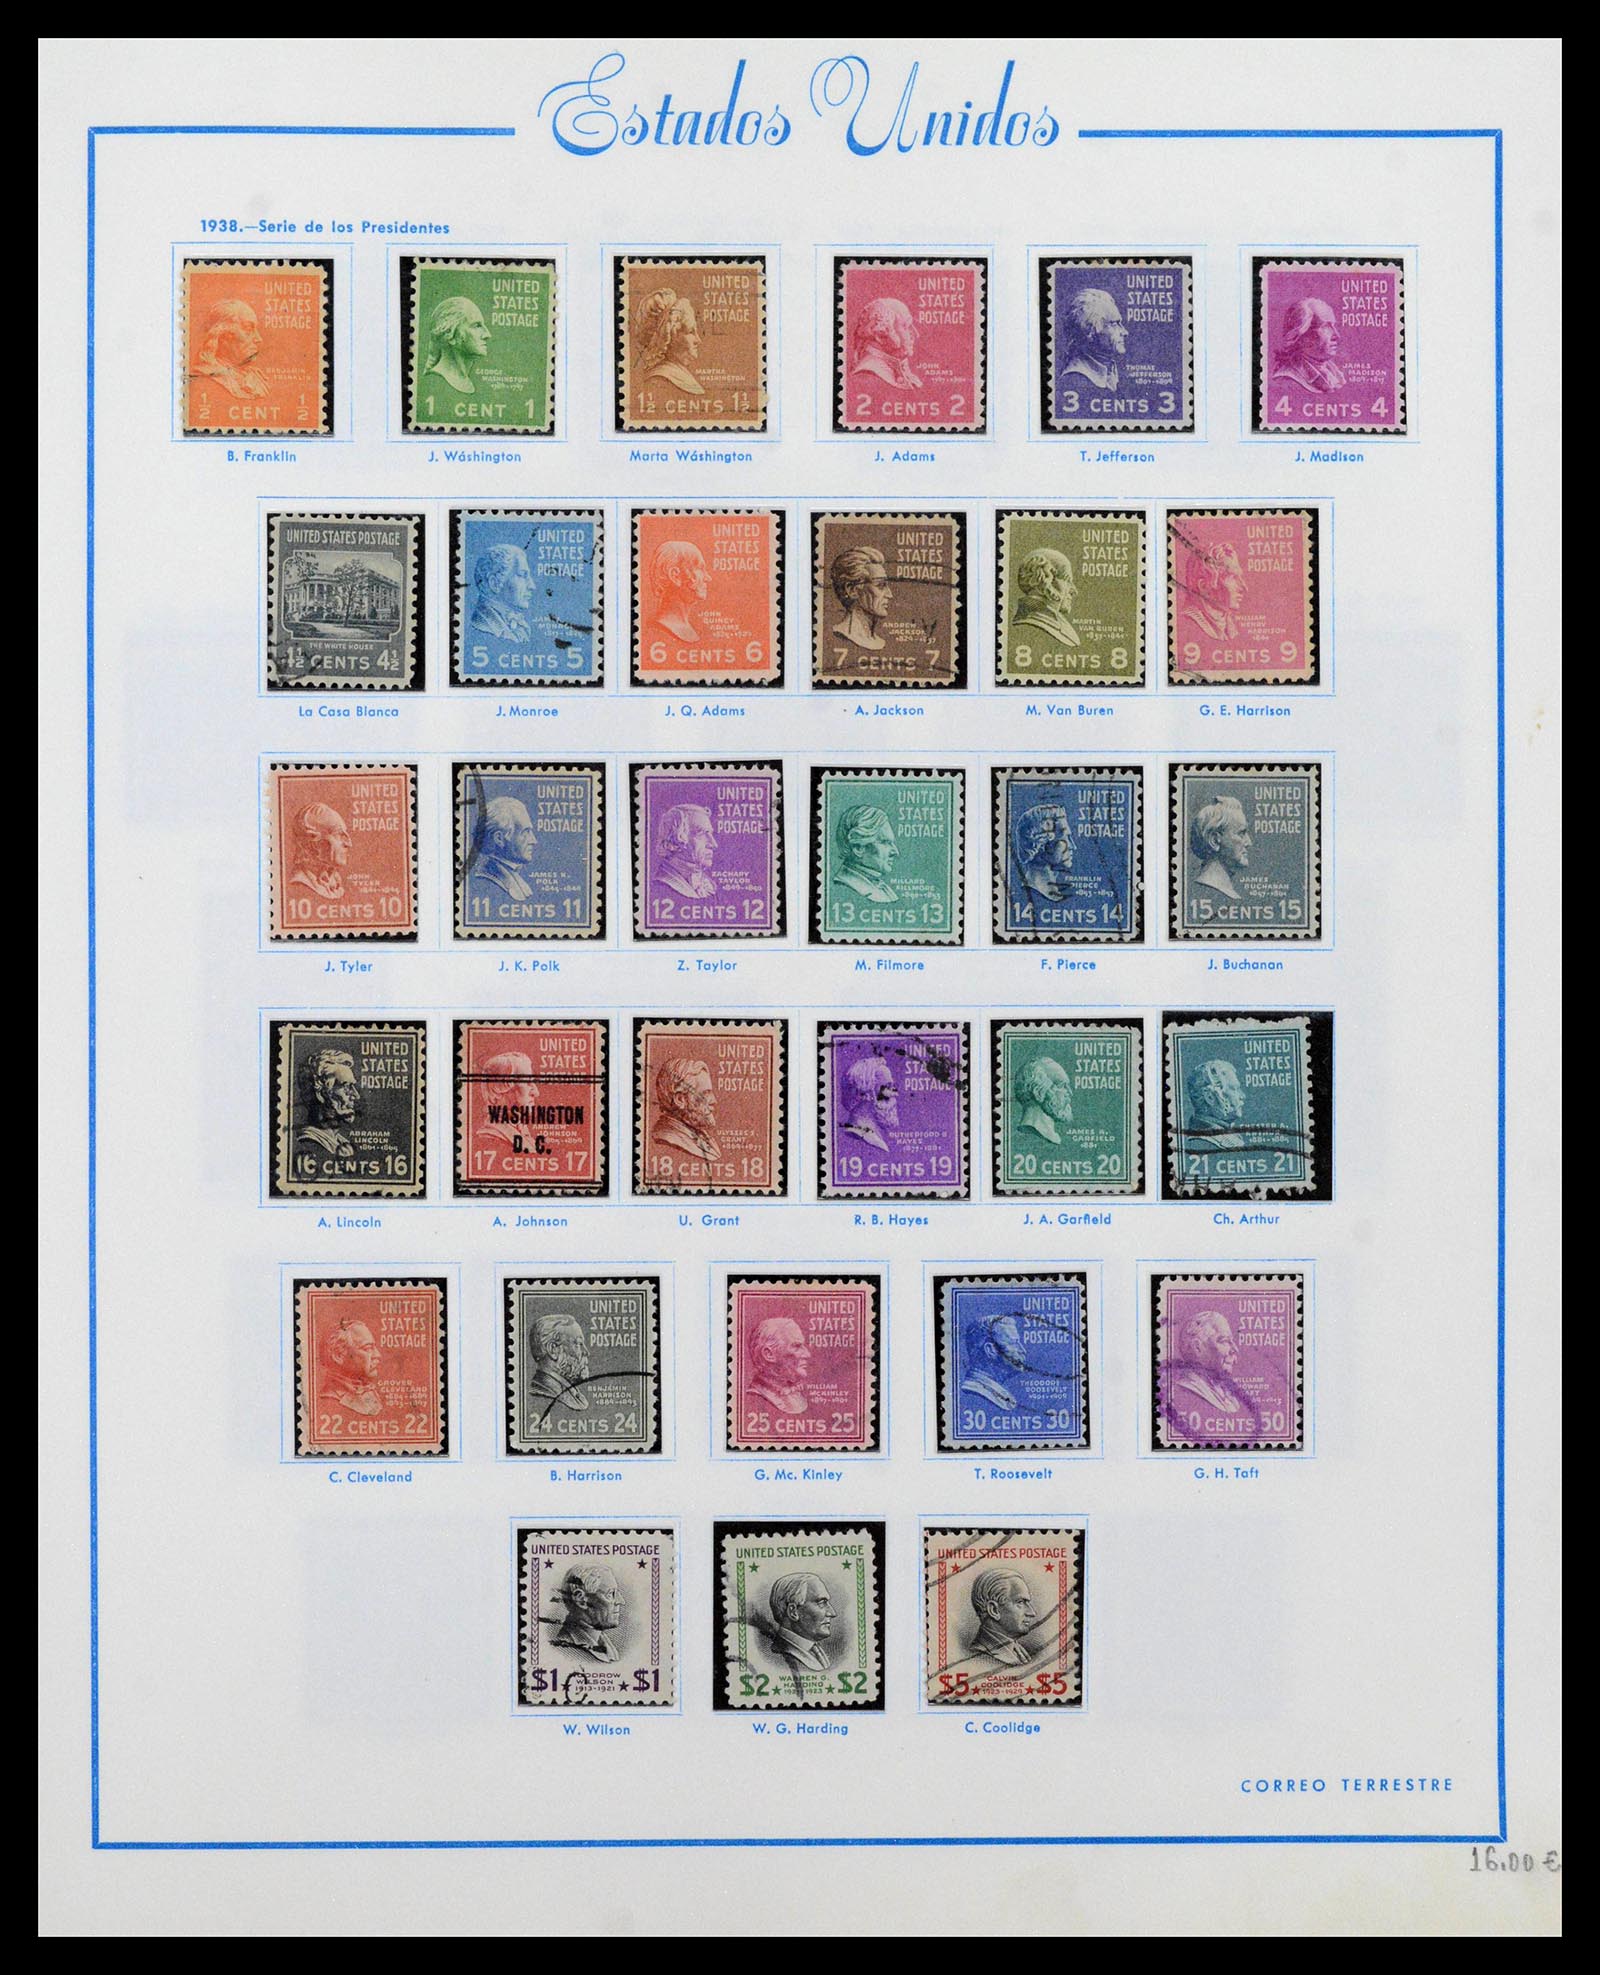 39190 0021 - Stamp collection 39190 USA 1851-1975.